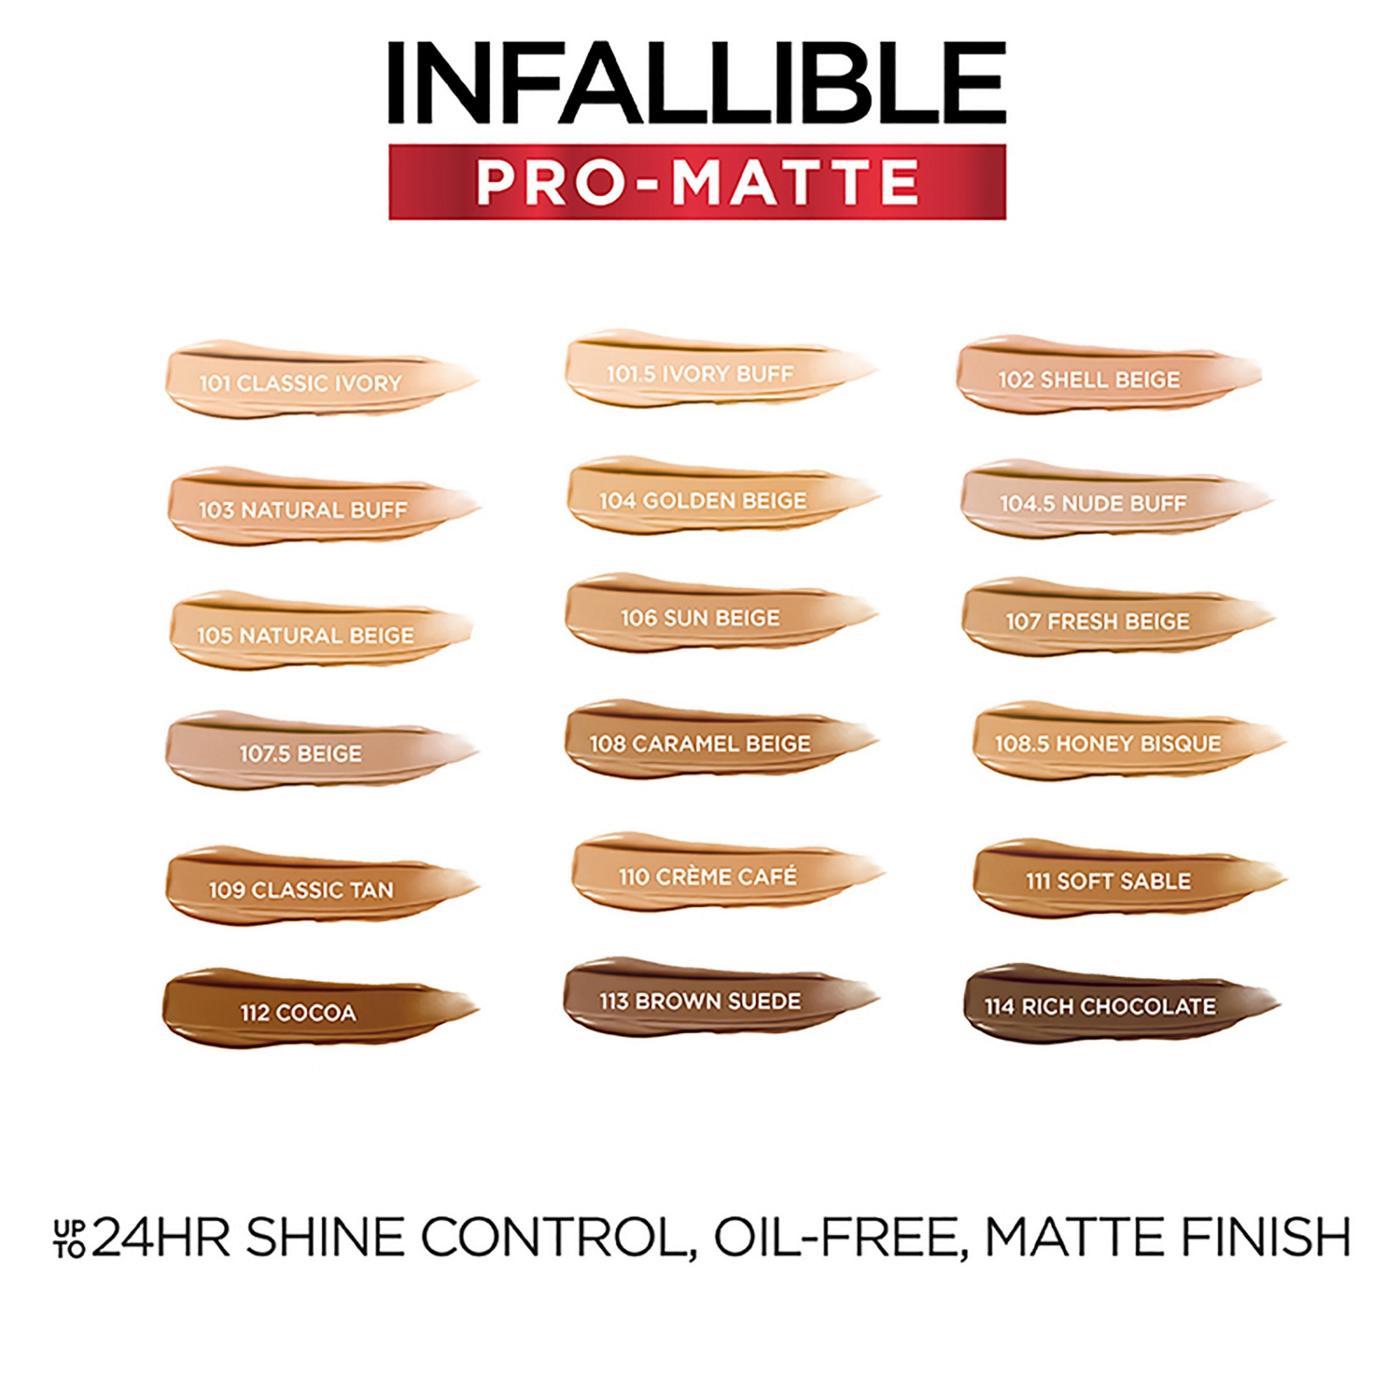 L'Oréal Paris Infallible Pro-Matte Blendable Foundation, Oil Free 111 Soft Sable; image 6 of 8